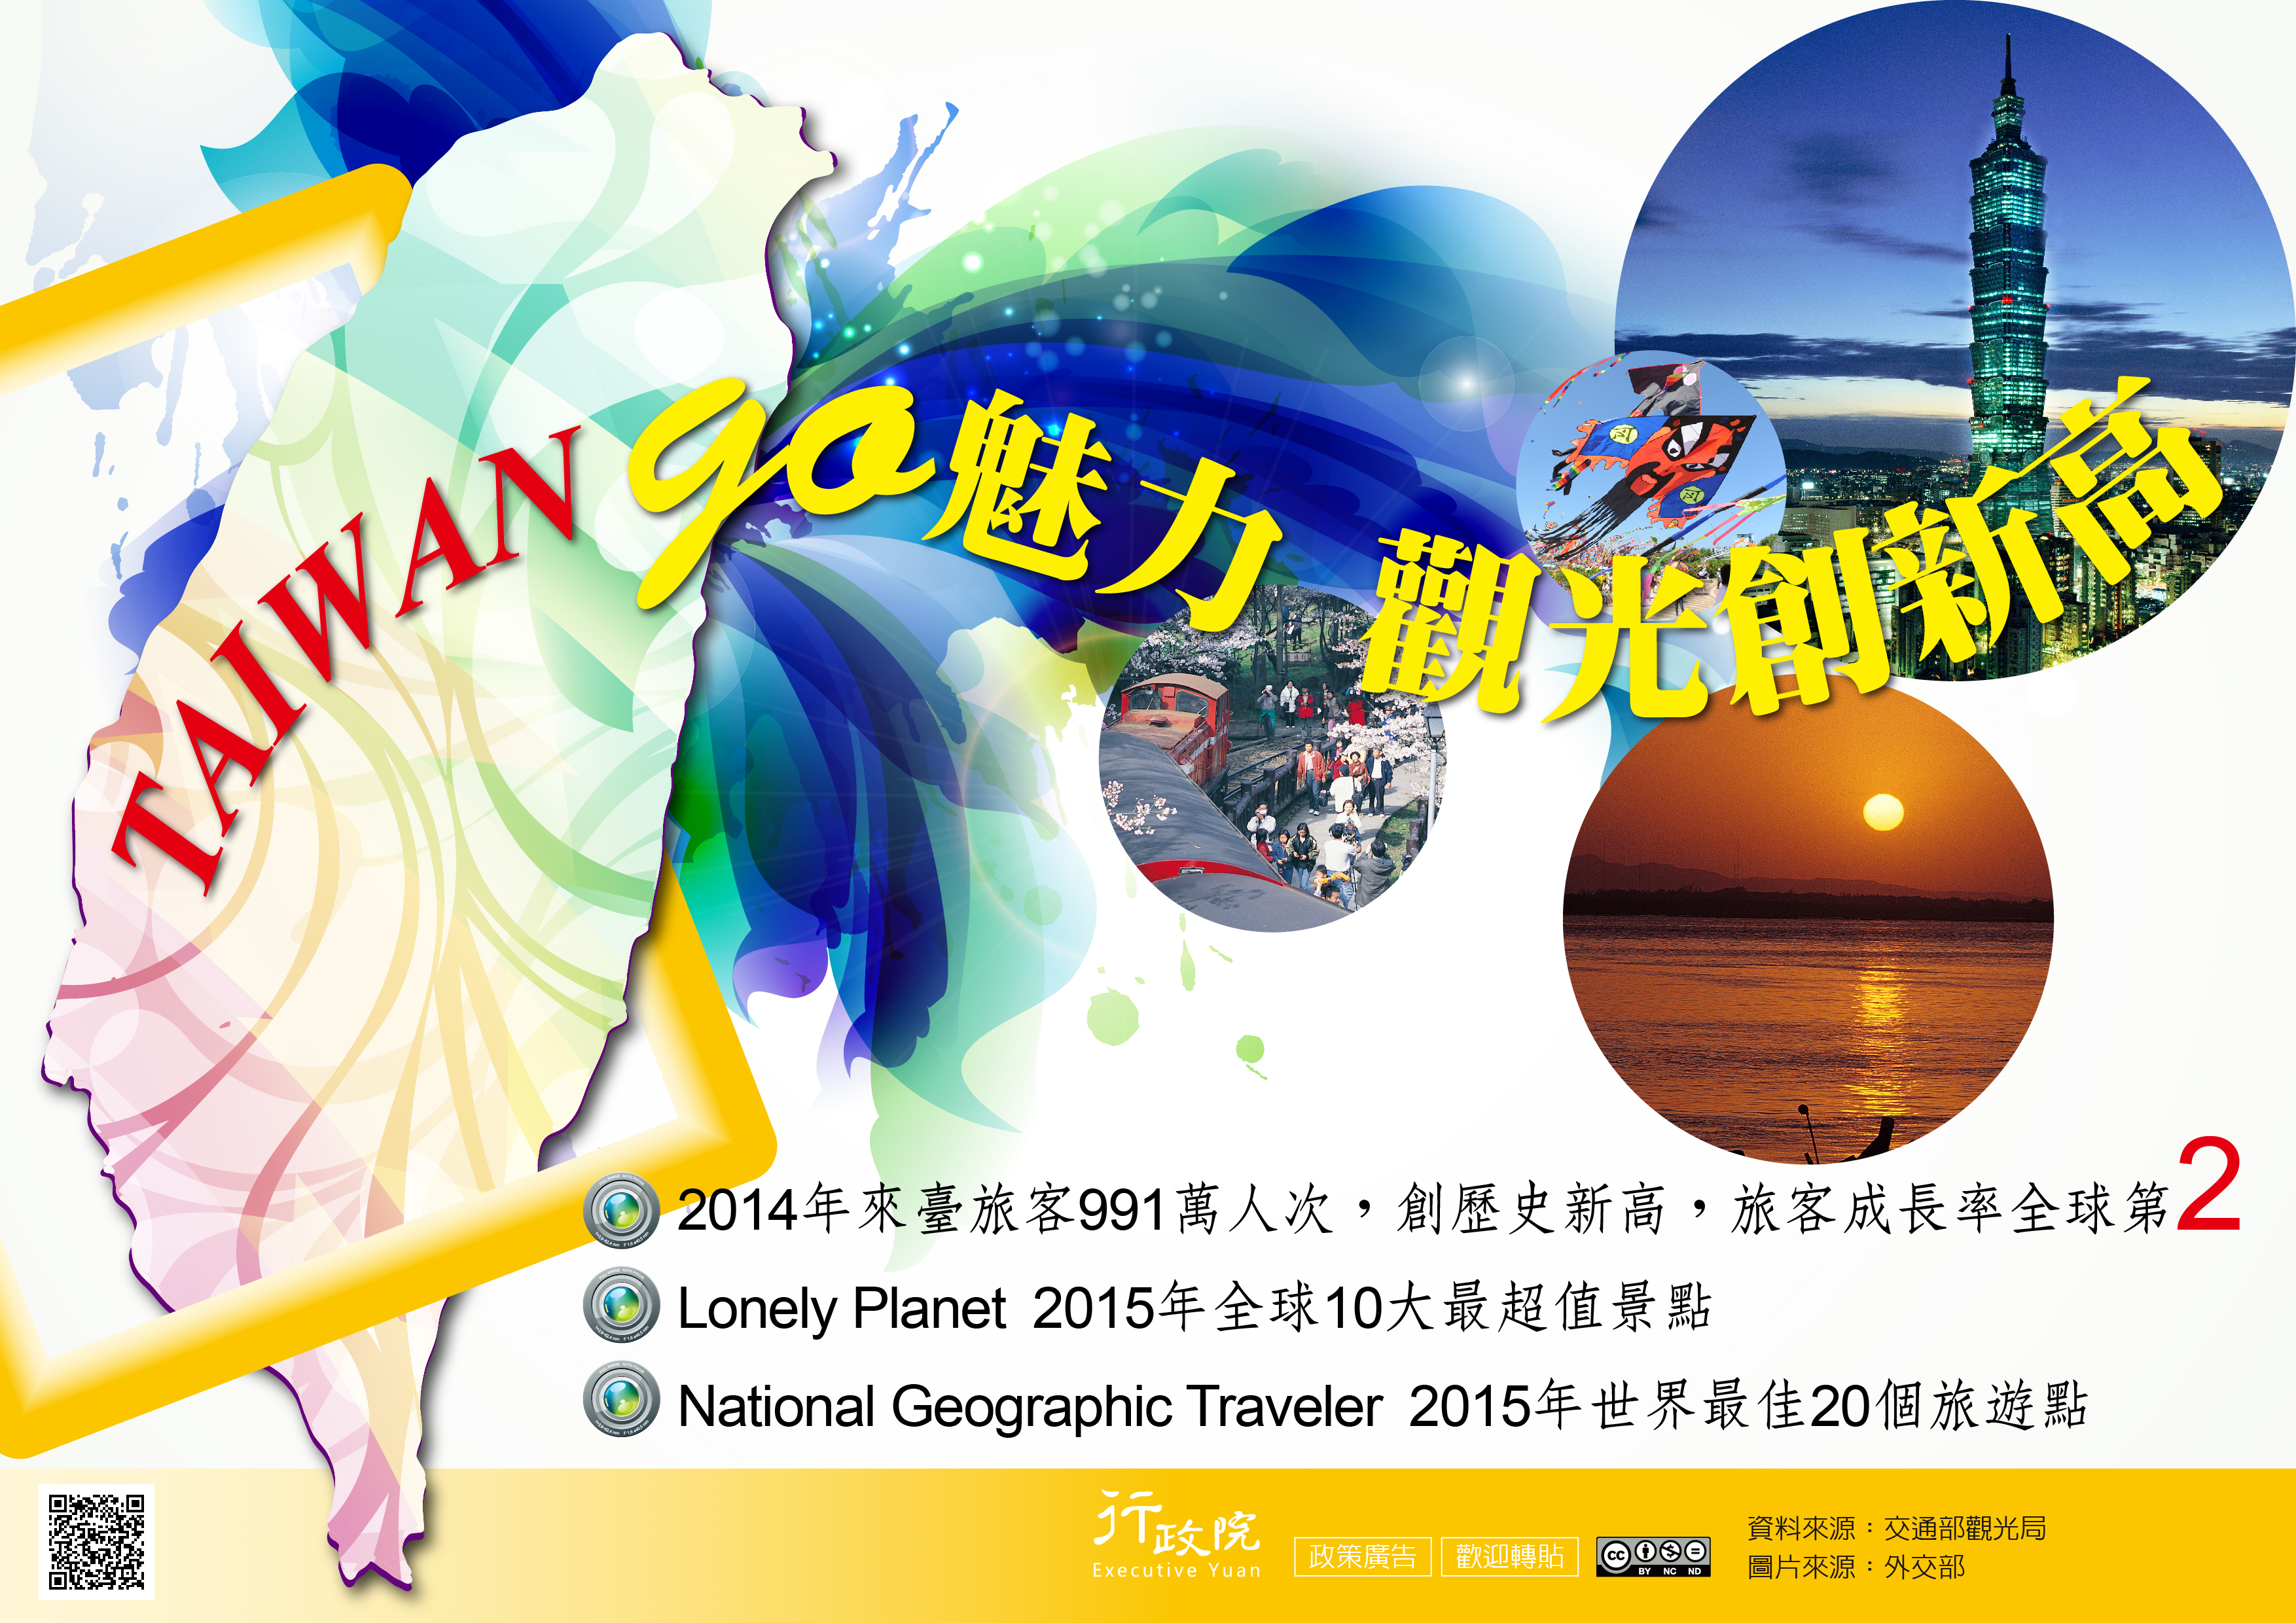 TAIWAN GO 魅力 觀光創新高